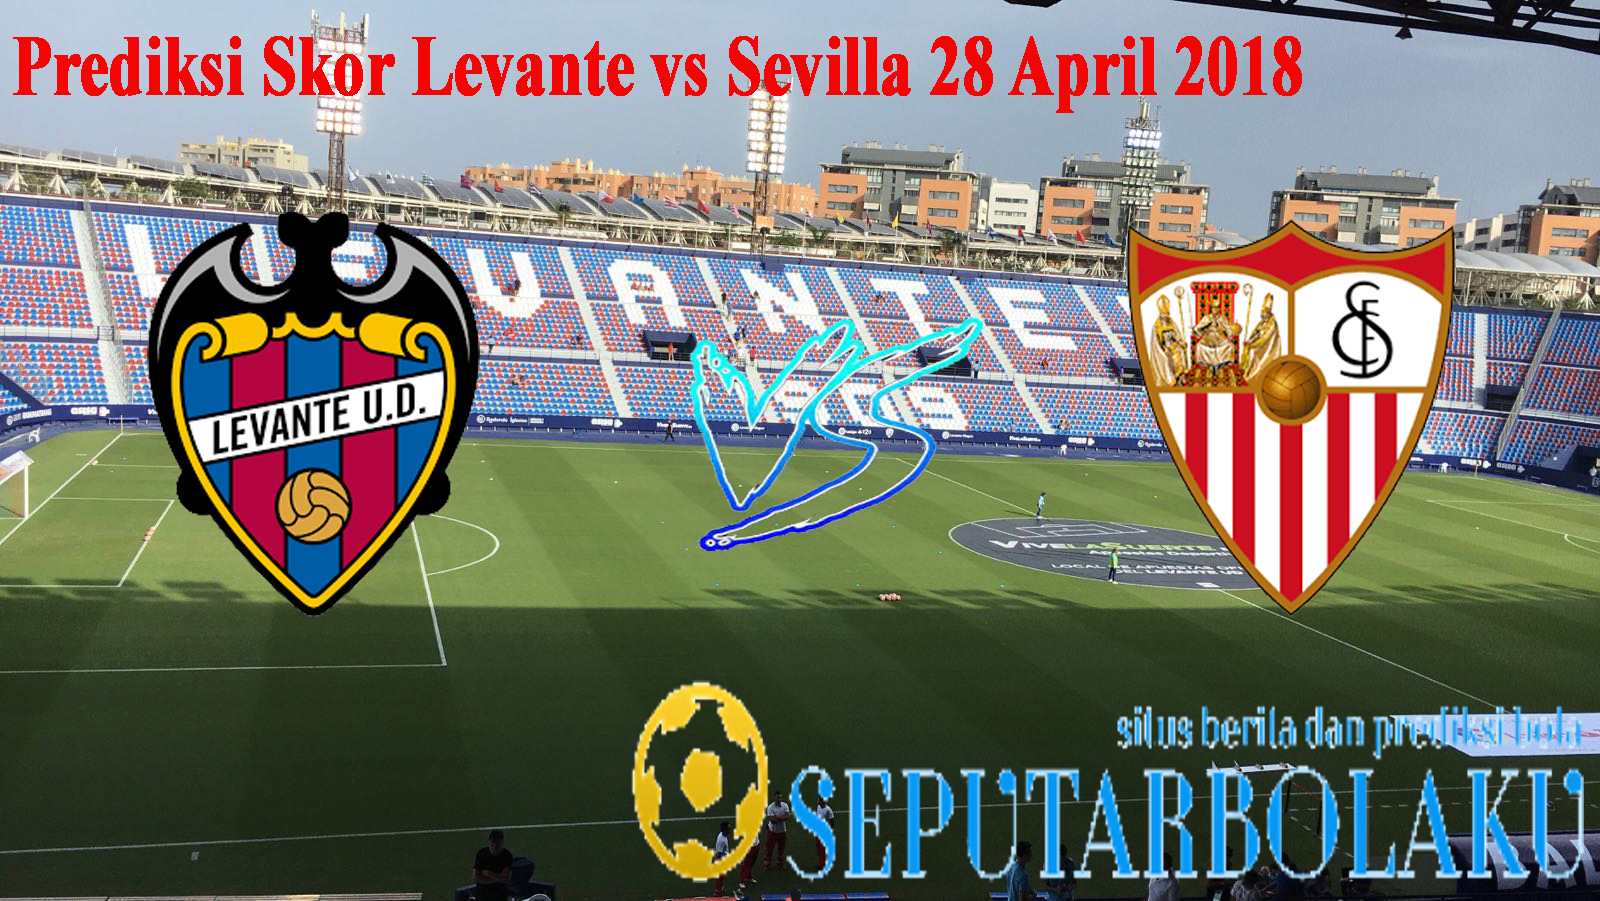 Prediksi Skor Levante vs Sevilla 28 April 2018